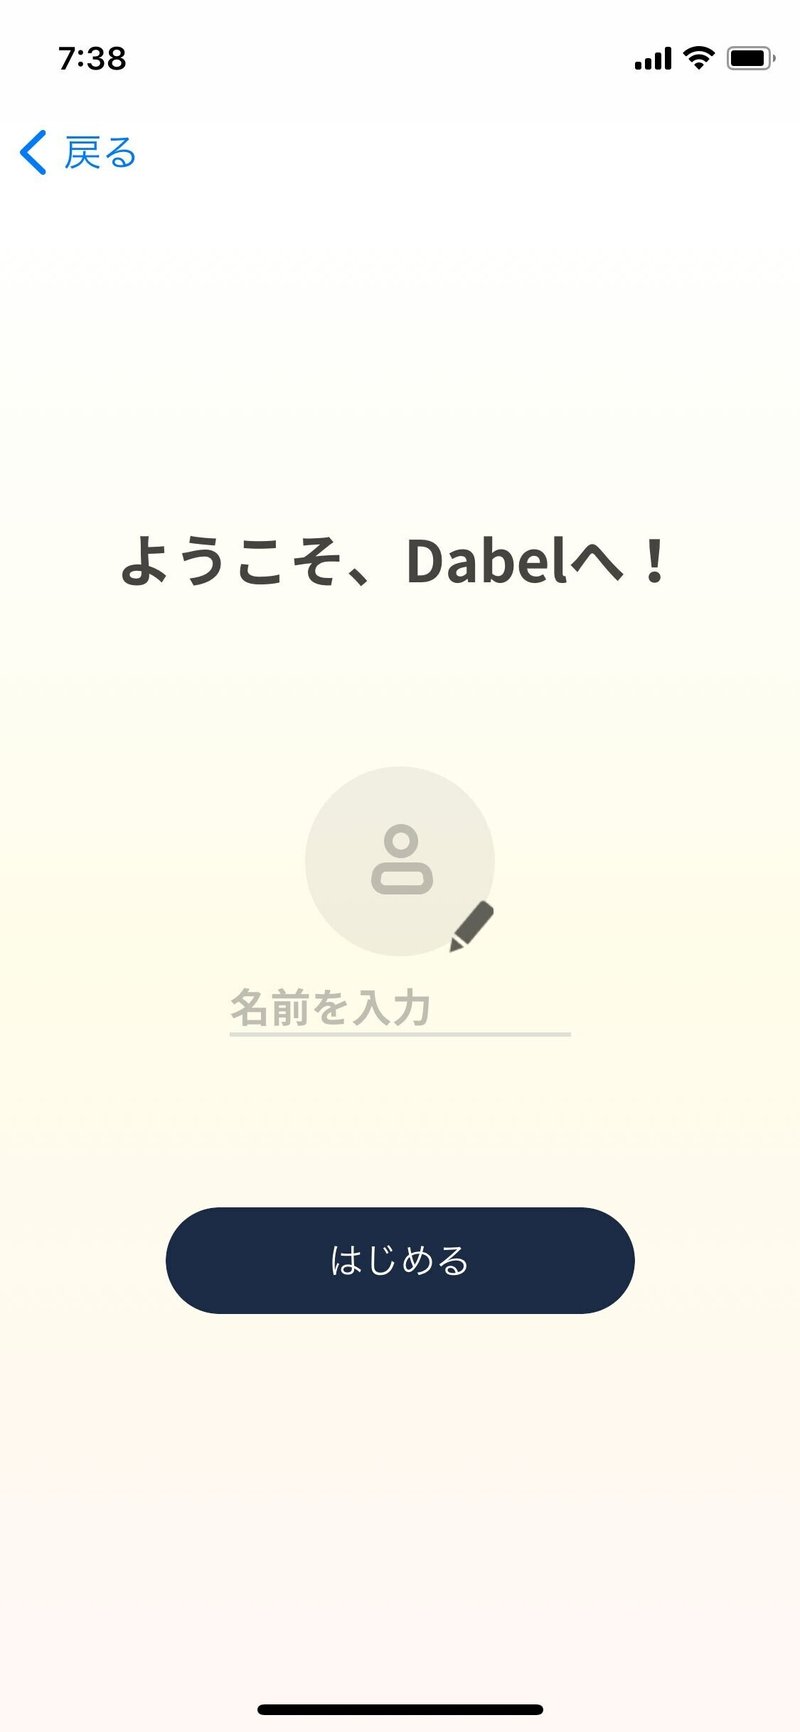 ようこそ、Dabelへ！ユーザー登録画面